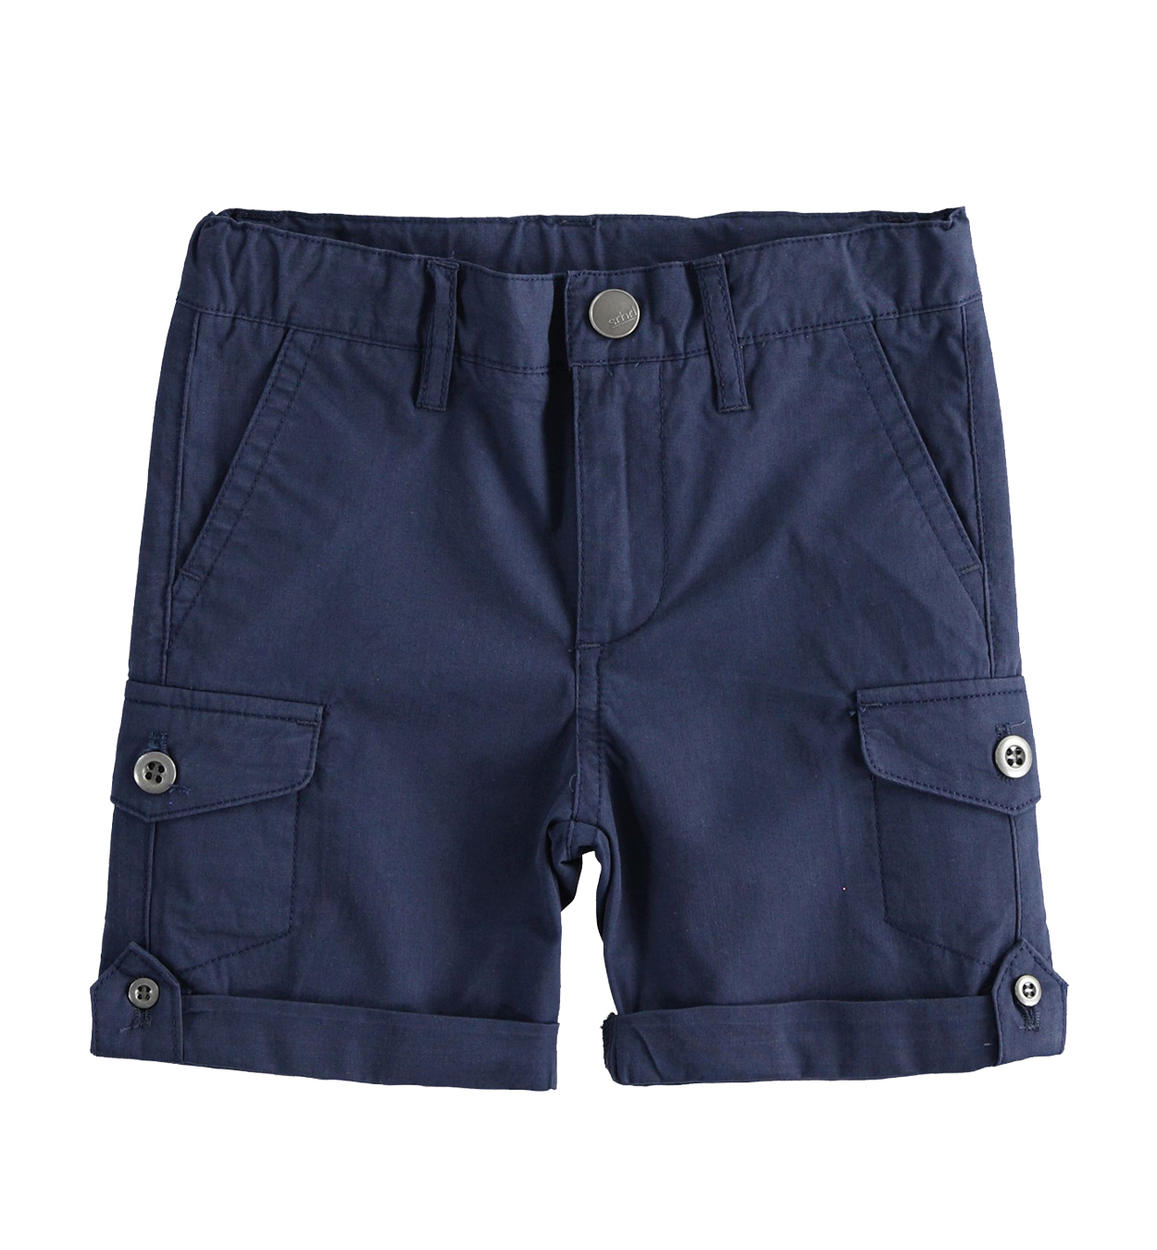 Pantalone corto per bambino con tasche laterali BLU Sarabanda